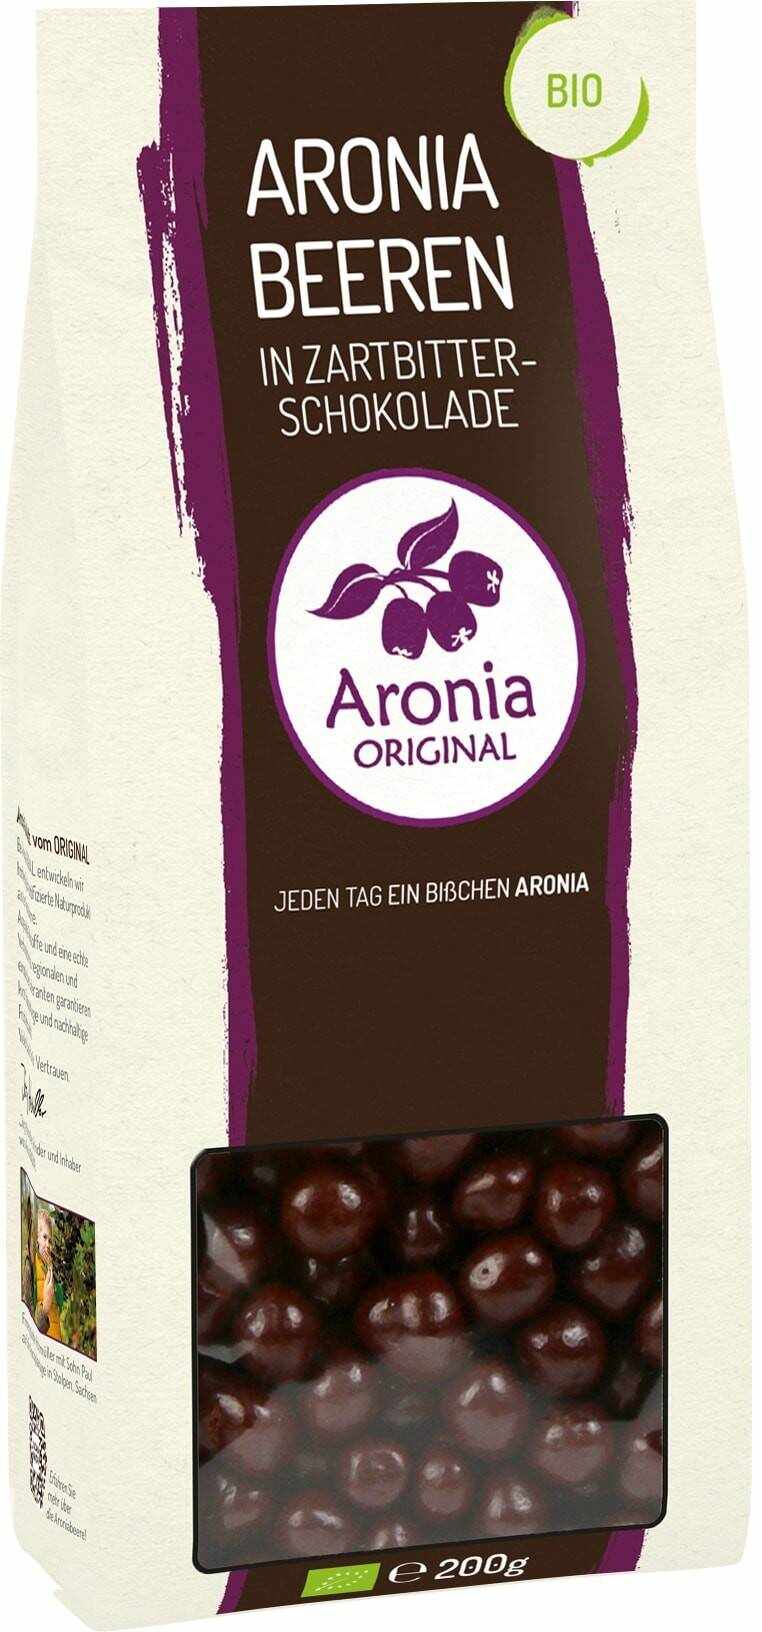 Fructe de aronia glazurate cu ciocolata, 200g - Aronia Original